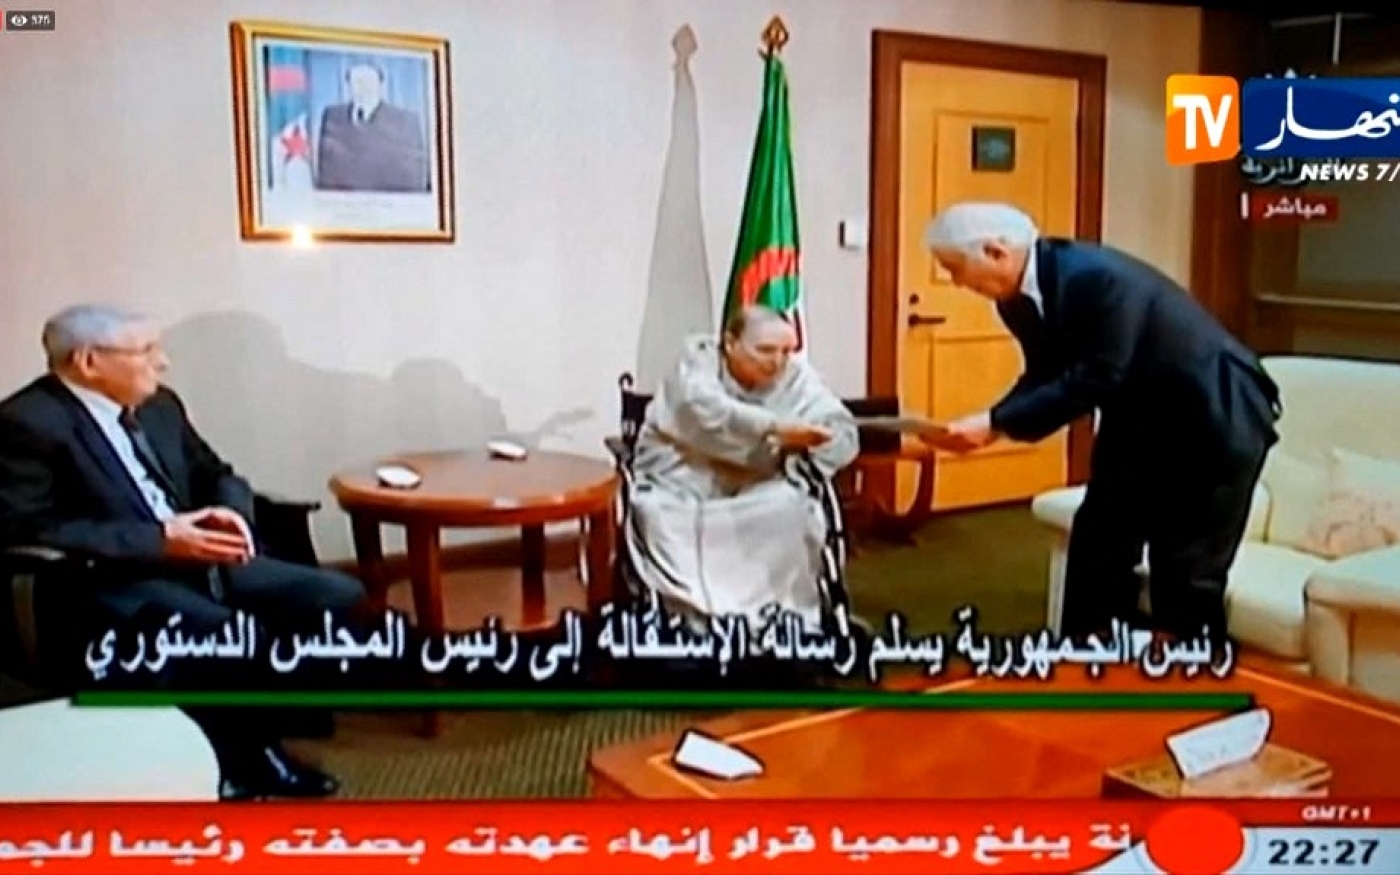 Le 2 avril 2019, Abdelaziz Bouteflika est contraint à la démission : il remet sa lettre au président du Conseil constitutionnel Tayez Belaïz (capture d’écran Ennahar)